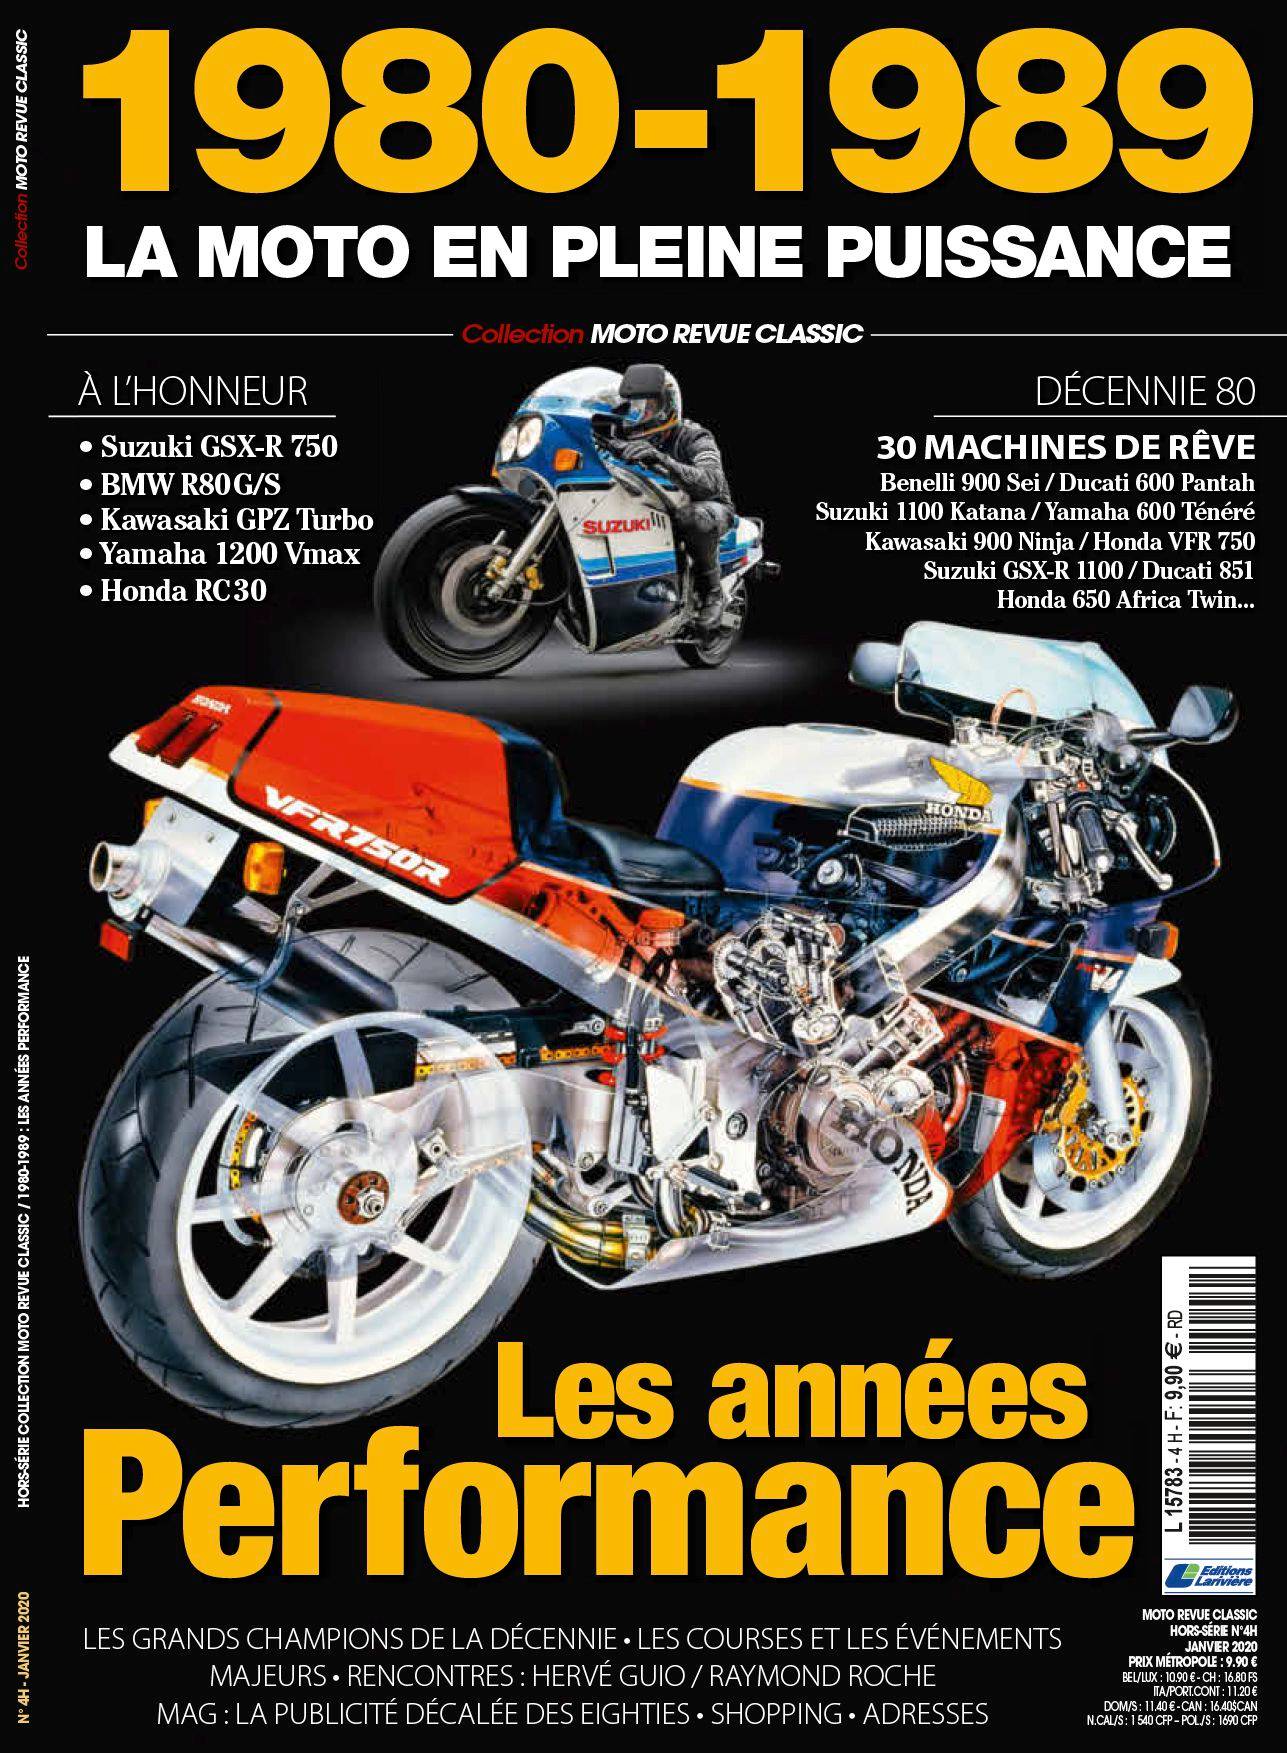 1980-1989 La moto en pleine puissance